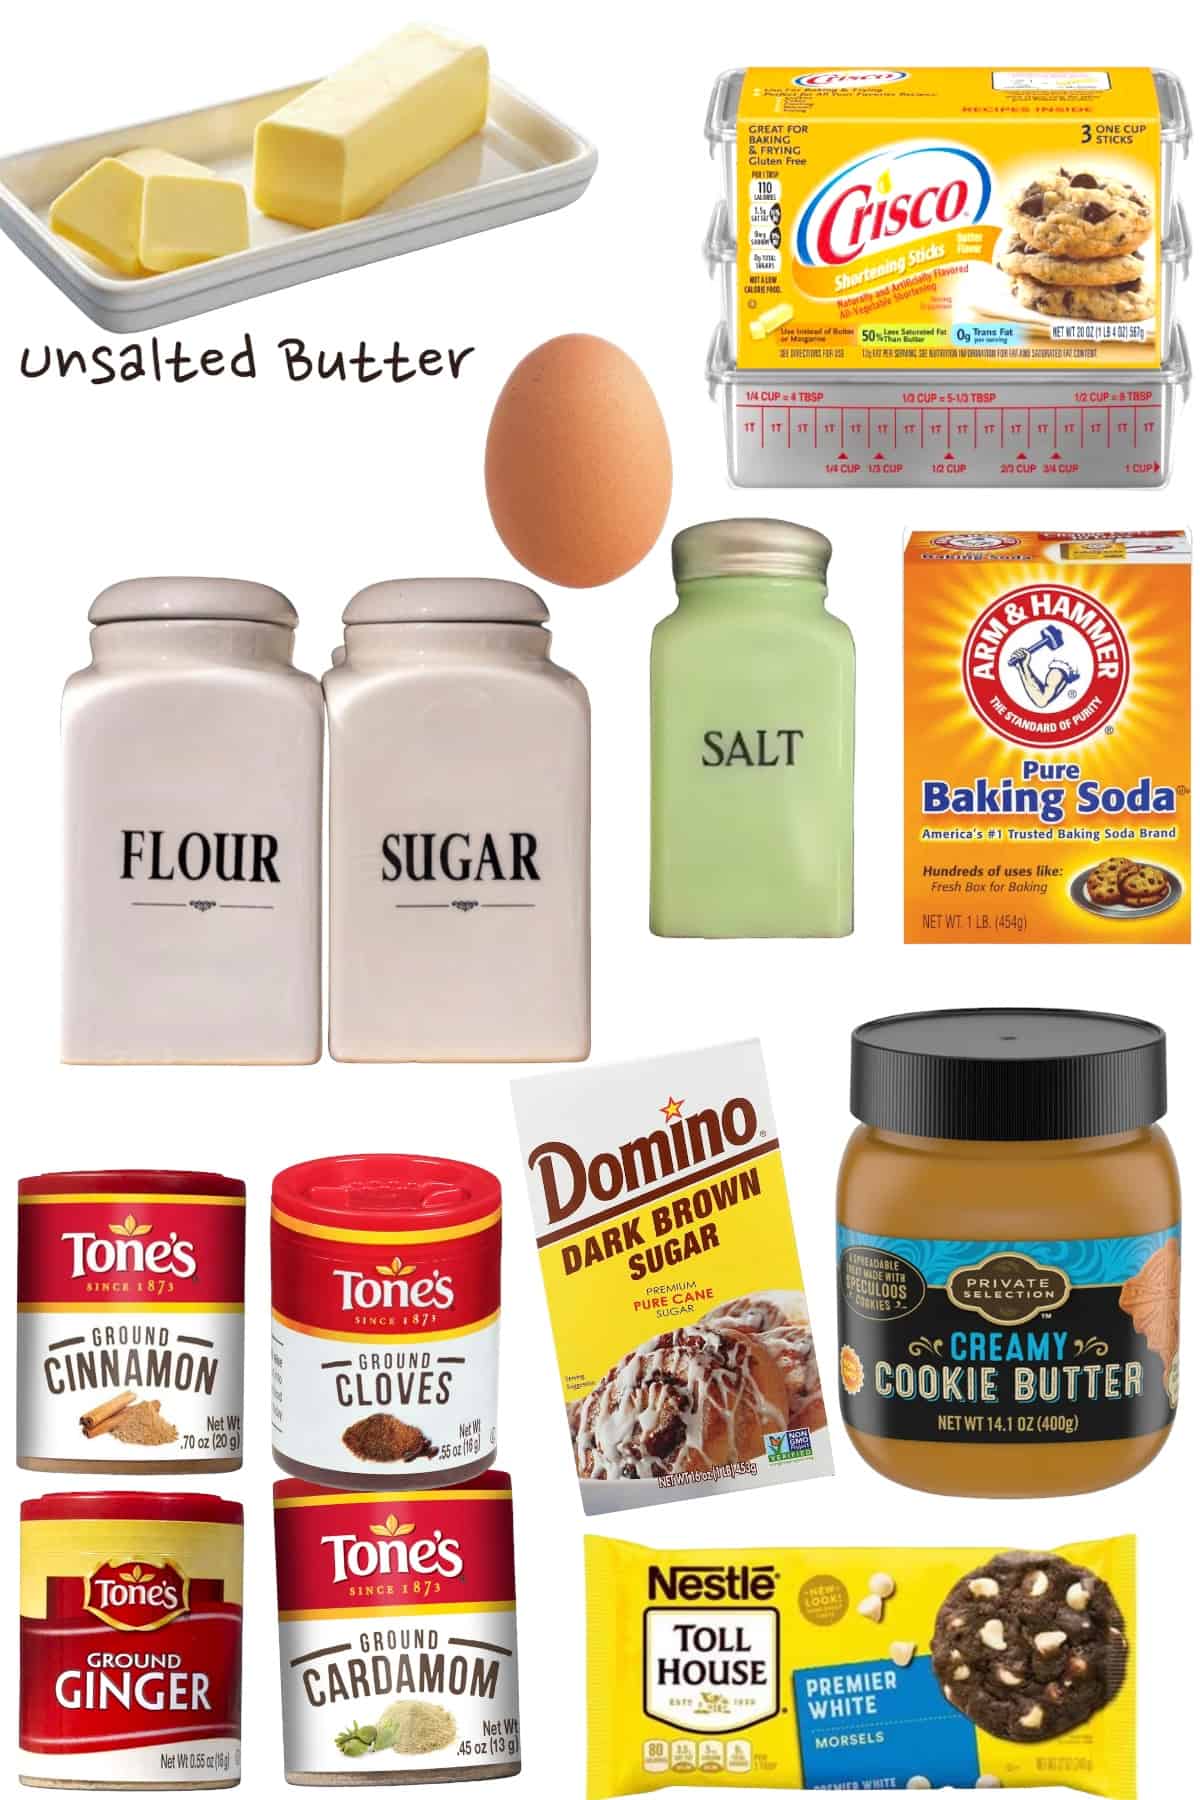 butter, shortening, flour, sugar, salt, baking soda, egg, cardamom, cinnamon, ginger, cloves, brown sugar, cookie butter, white chips.